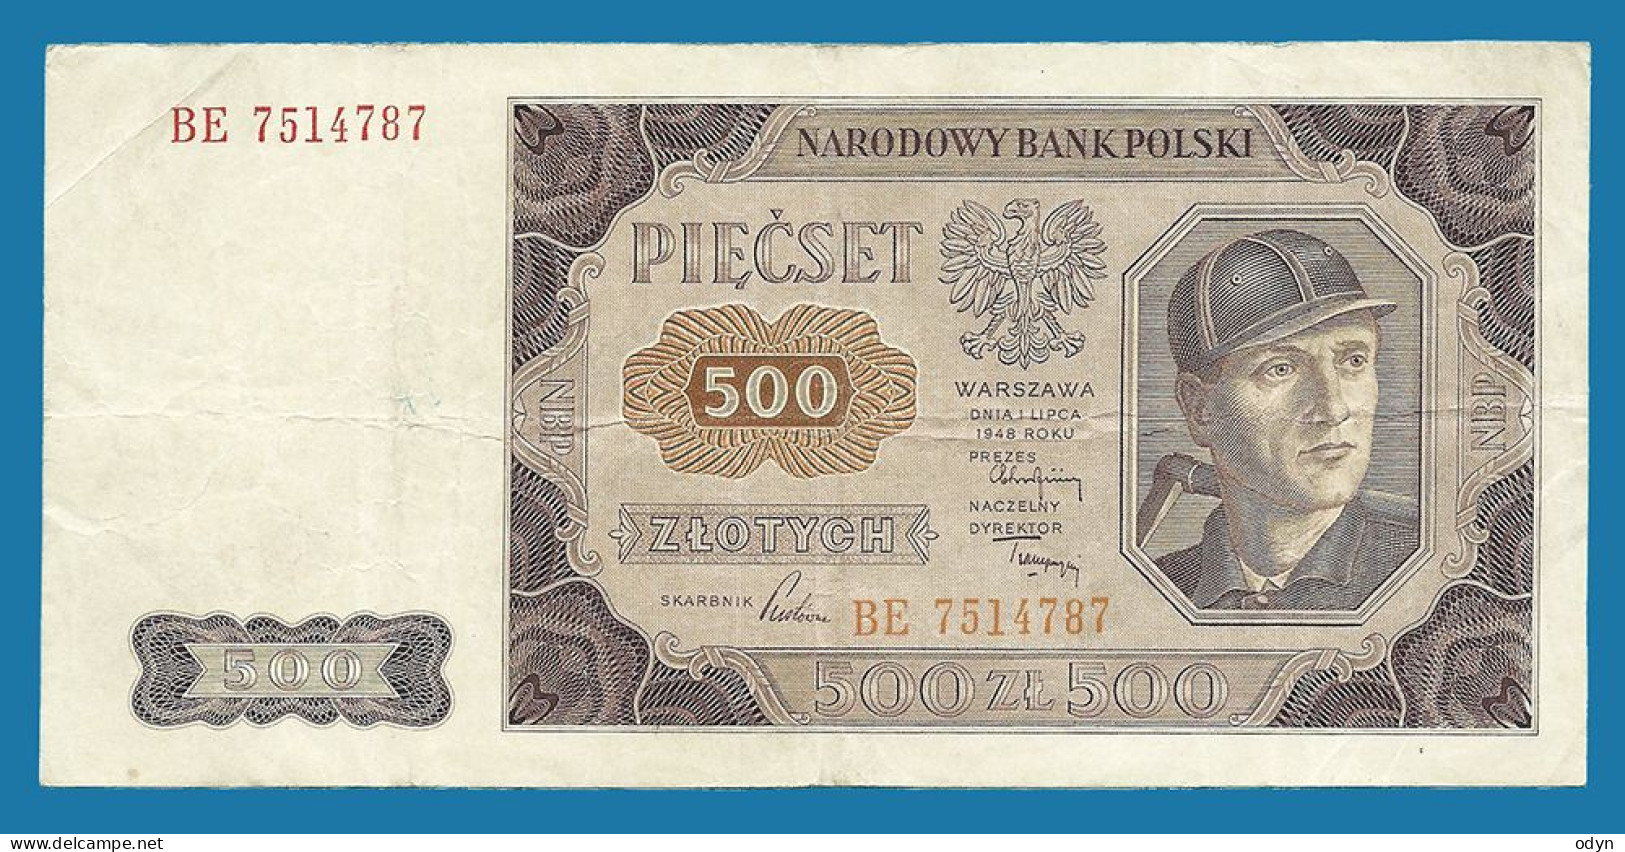 Poland, 1948, 500 Zlotych, Ser. BE 7514787, VF - Poland